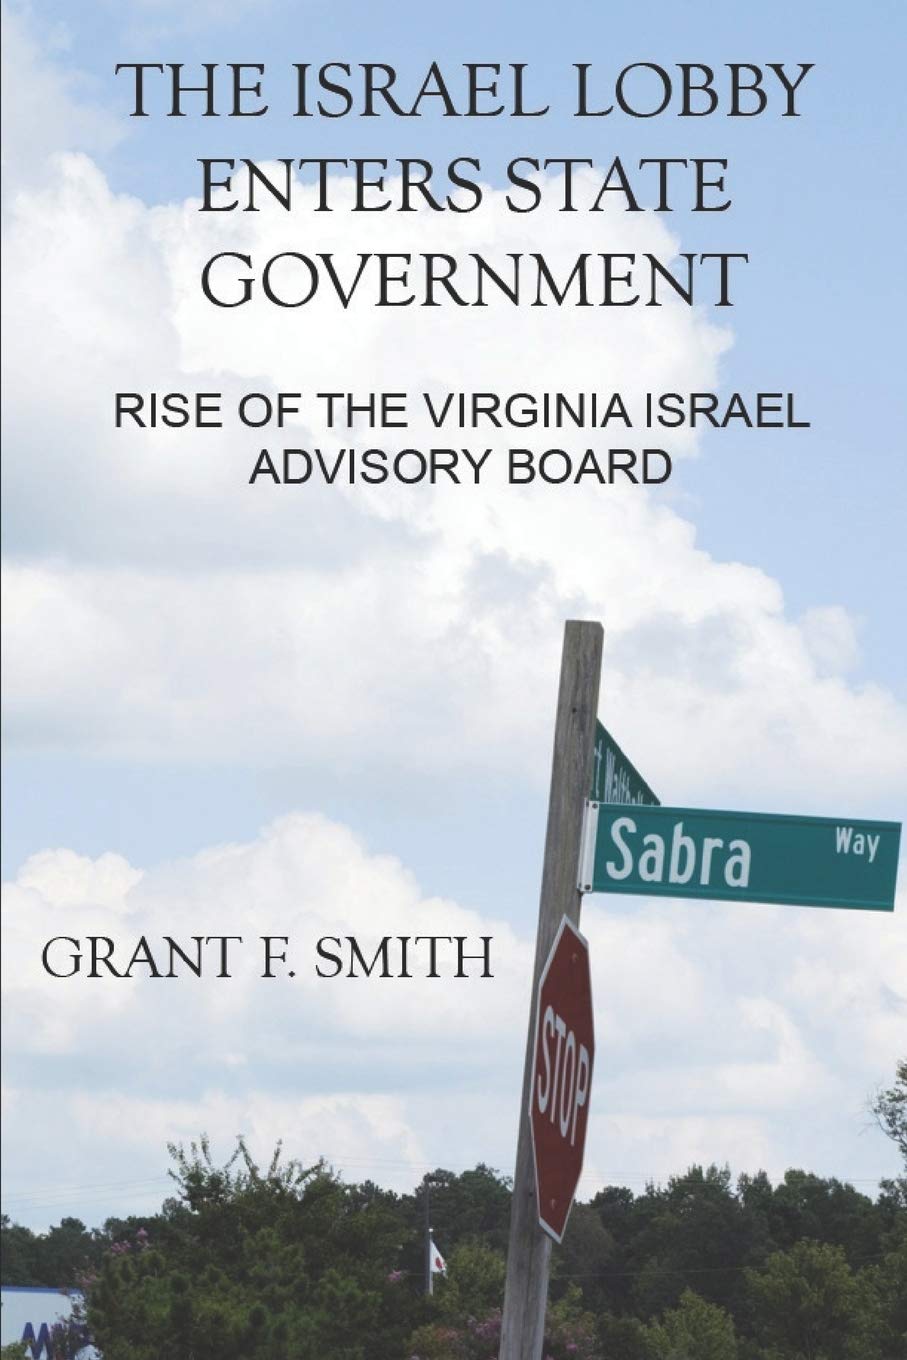 Израильское лобби входит в правительство штата: Восстание Вирджинии Израильский консультативный совет